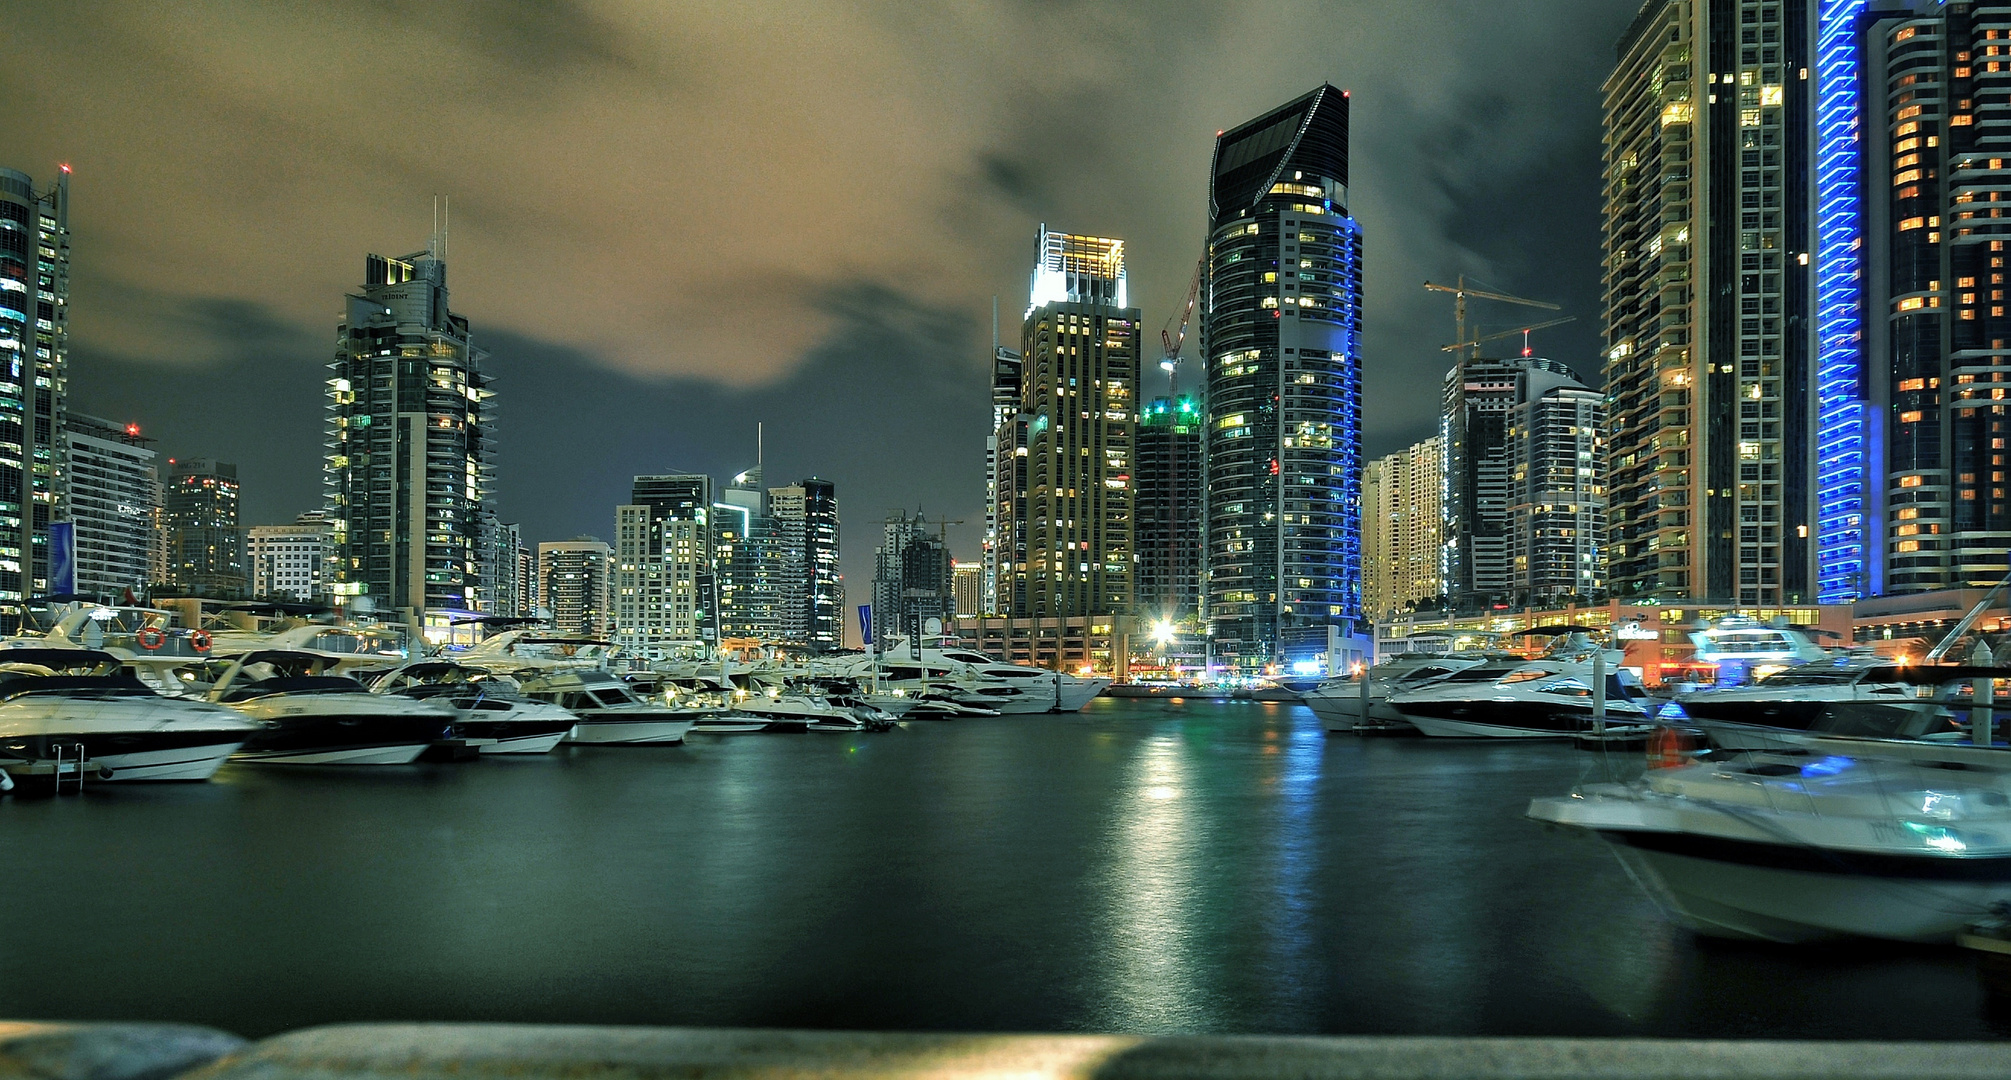 In Dubai Marina